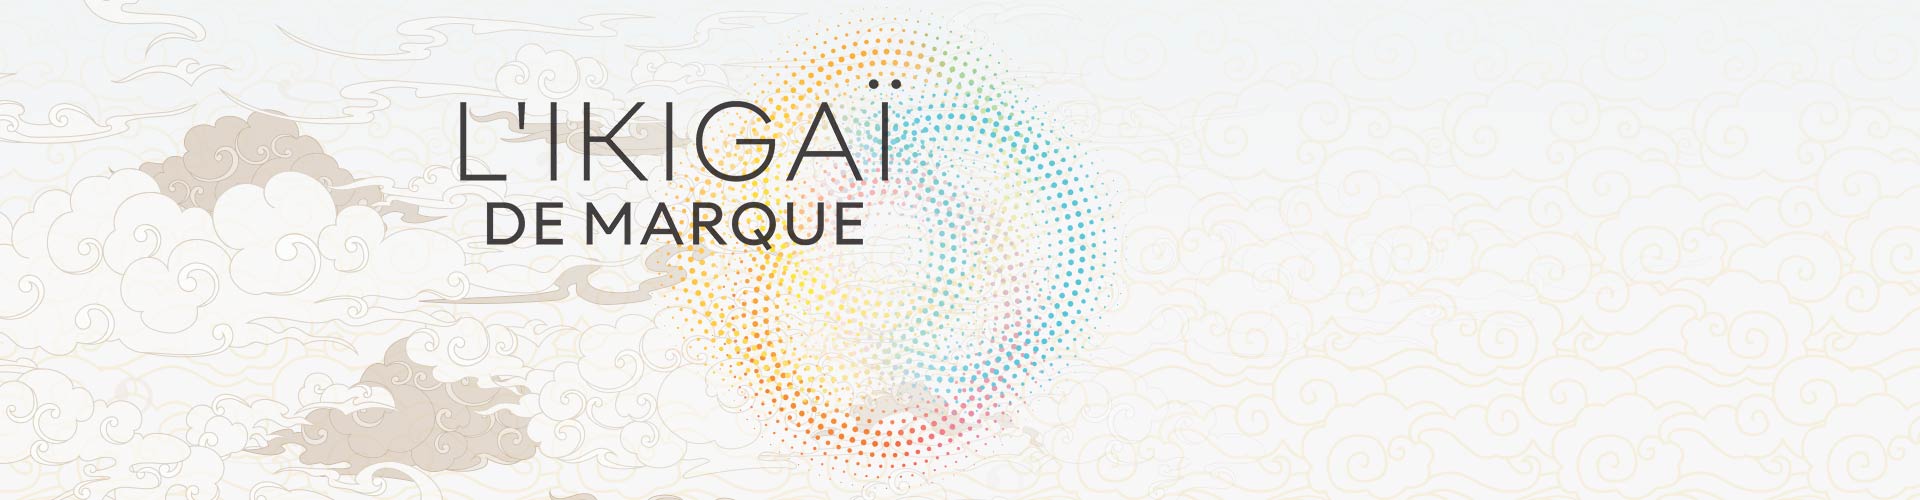 ikigai - Le guide pour créer l’entreprise qui vous ressemble